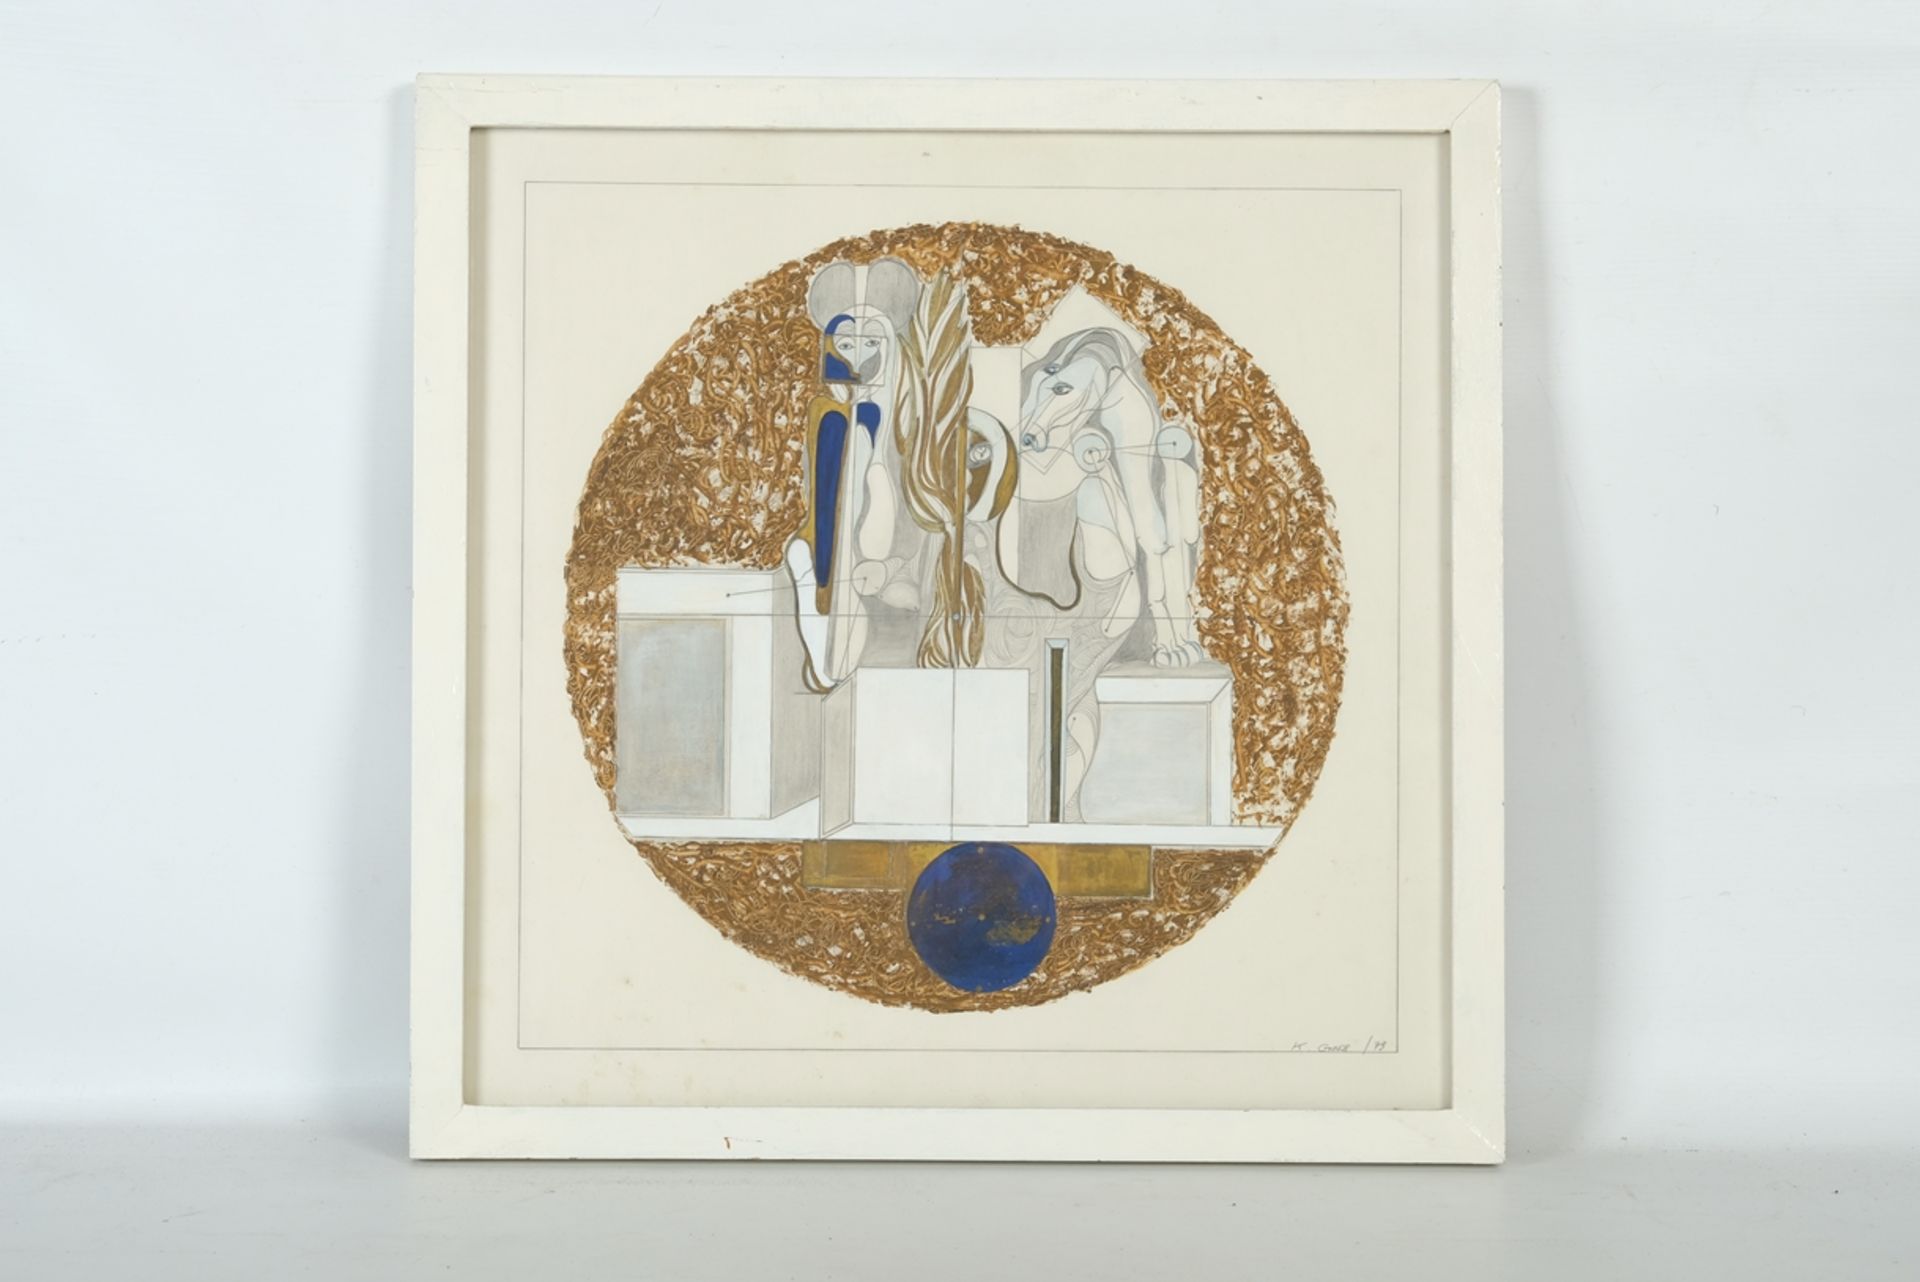 GROSS K., "Surrealistische und geometrische Zeichnung" von Mensch und Pferd, Weiß, Gold und Blau, s - Image 2 of 4